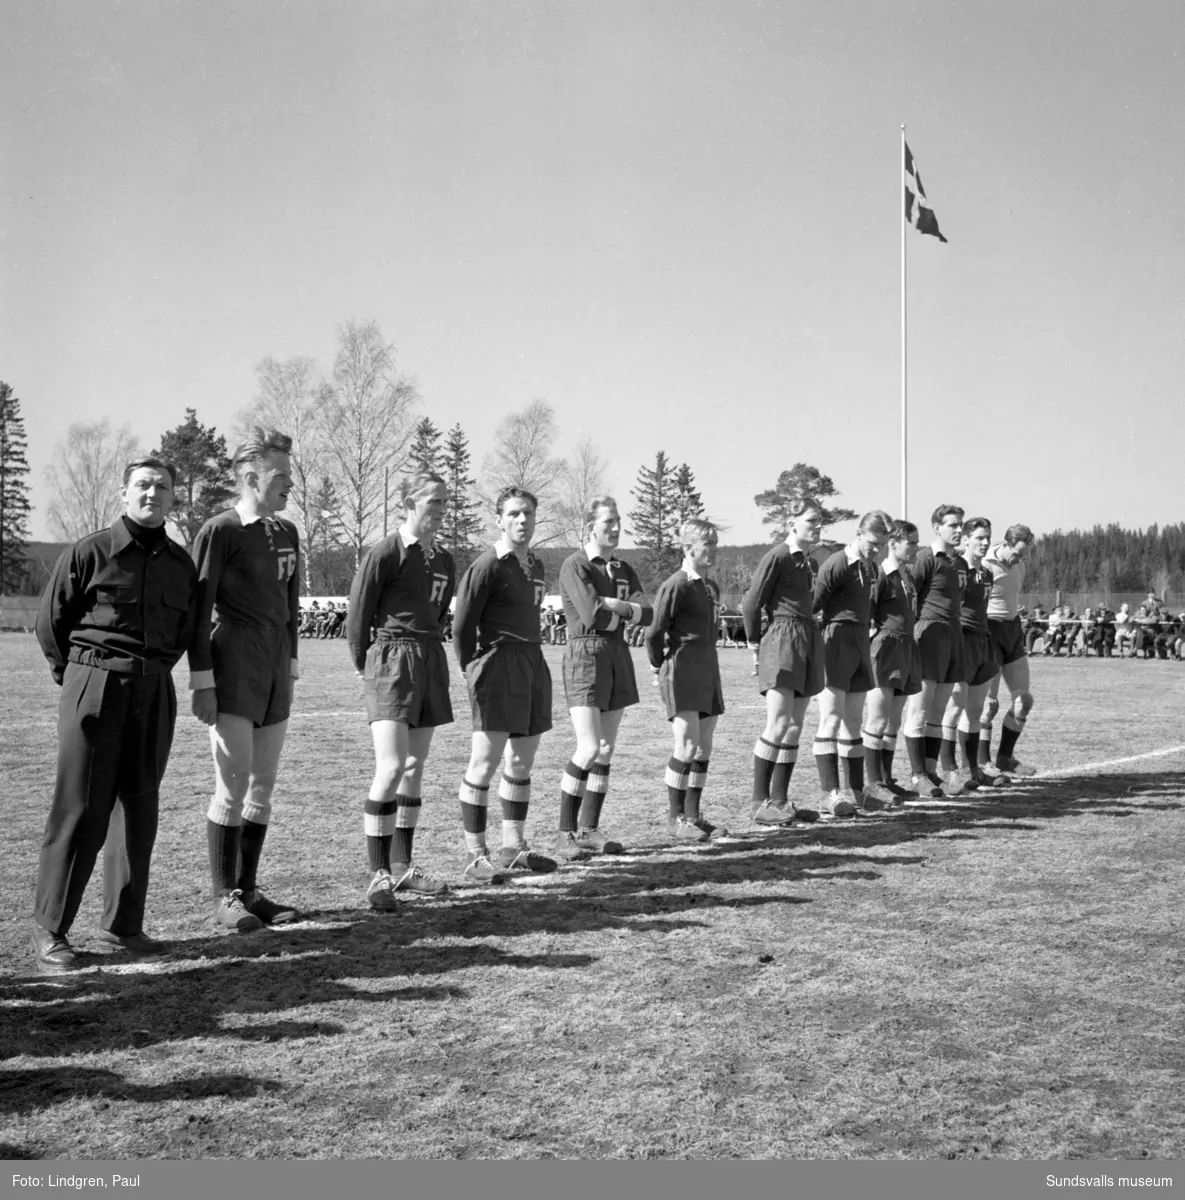 Fagerviks GF:s nya klubbfana invigdes i samband med vänskapsmatchen mellan Fagervik och Friska Viljor. Matchen som spelades på Forsvallen slutade med 3-1 till hemmalaget Fagervik.